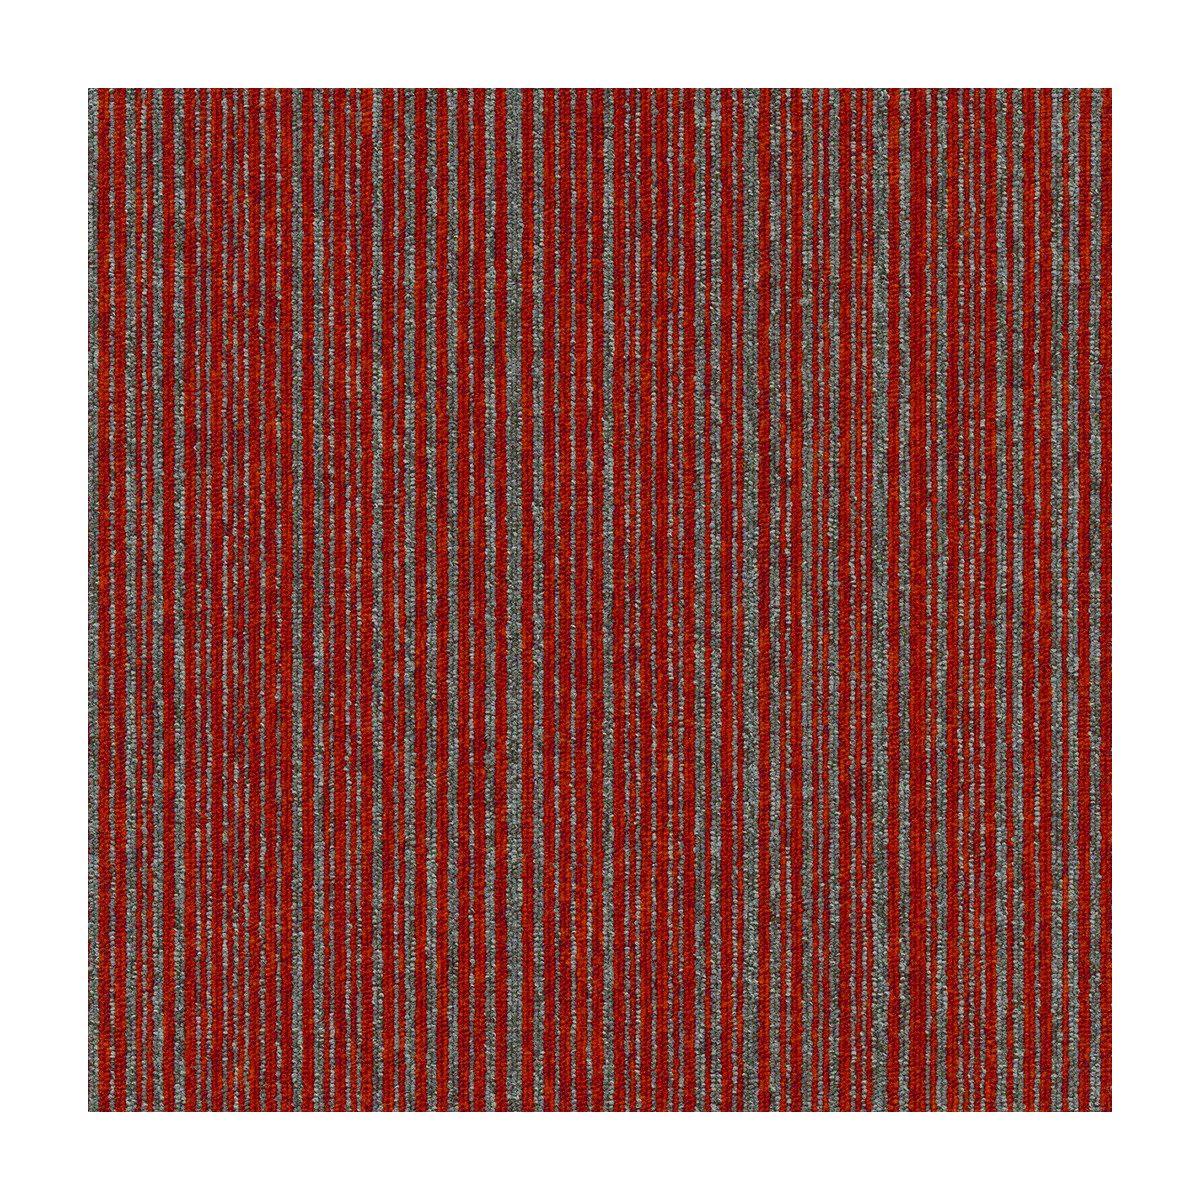 Tapibel Kobercový štvorec Coral Lines 60380-50 červeno-šedý - 50x50 cm